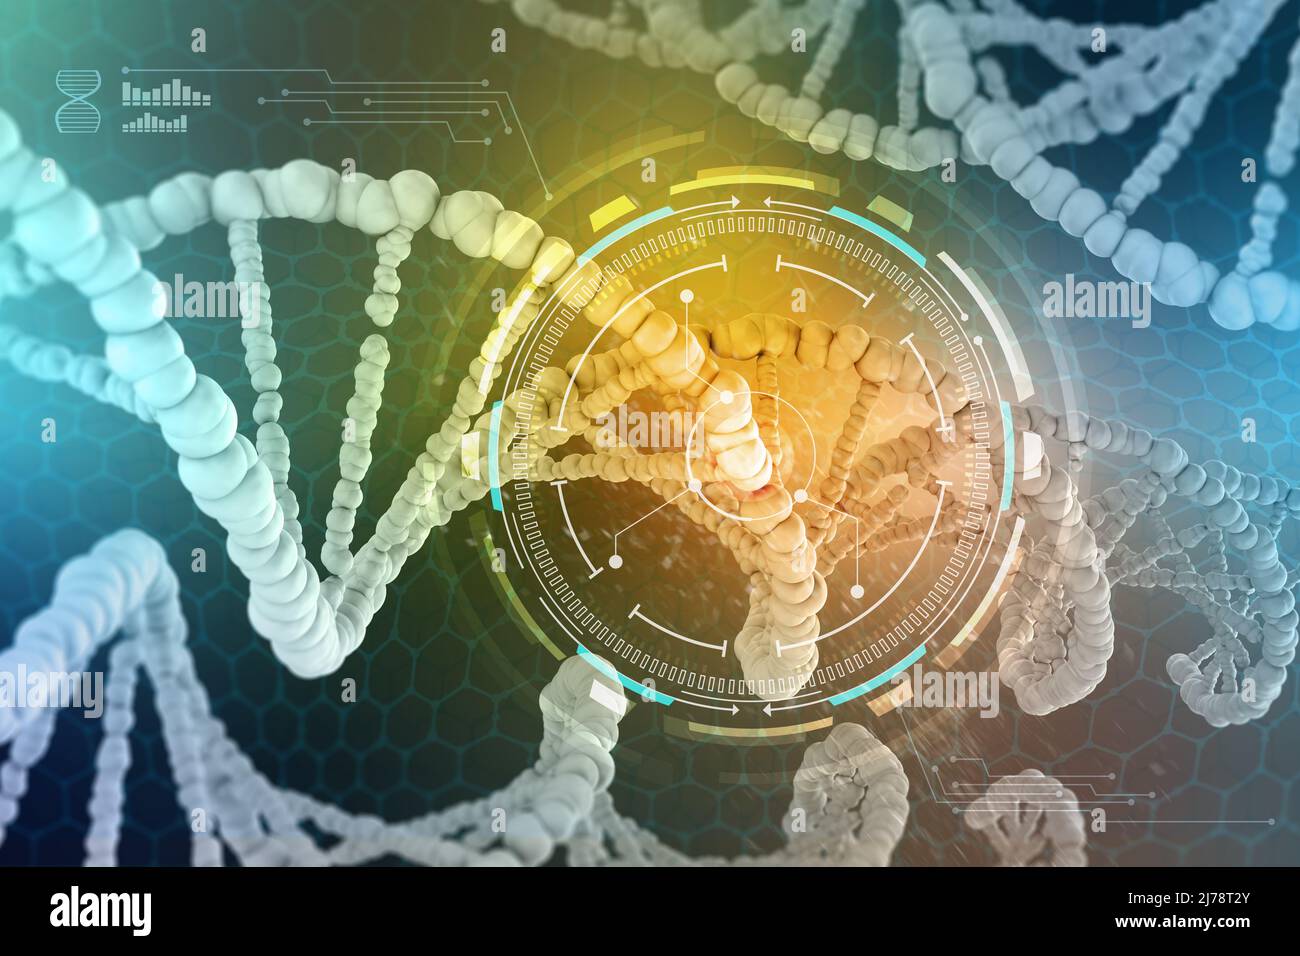 Ingeniería genética. El estudio de la estructura del ADN y ARN, la introducción de cambios a nivel genético. Investigación médica moderna de células madre. Foto de stock